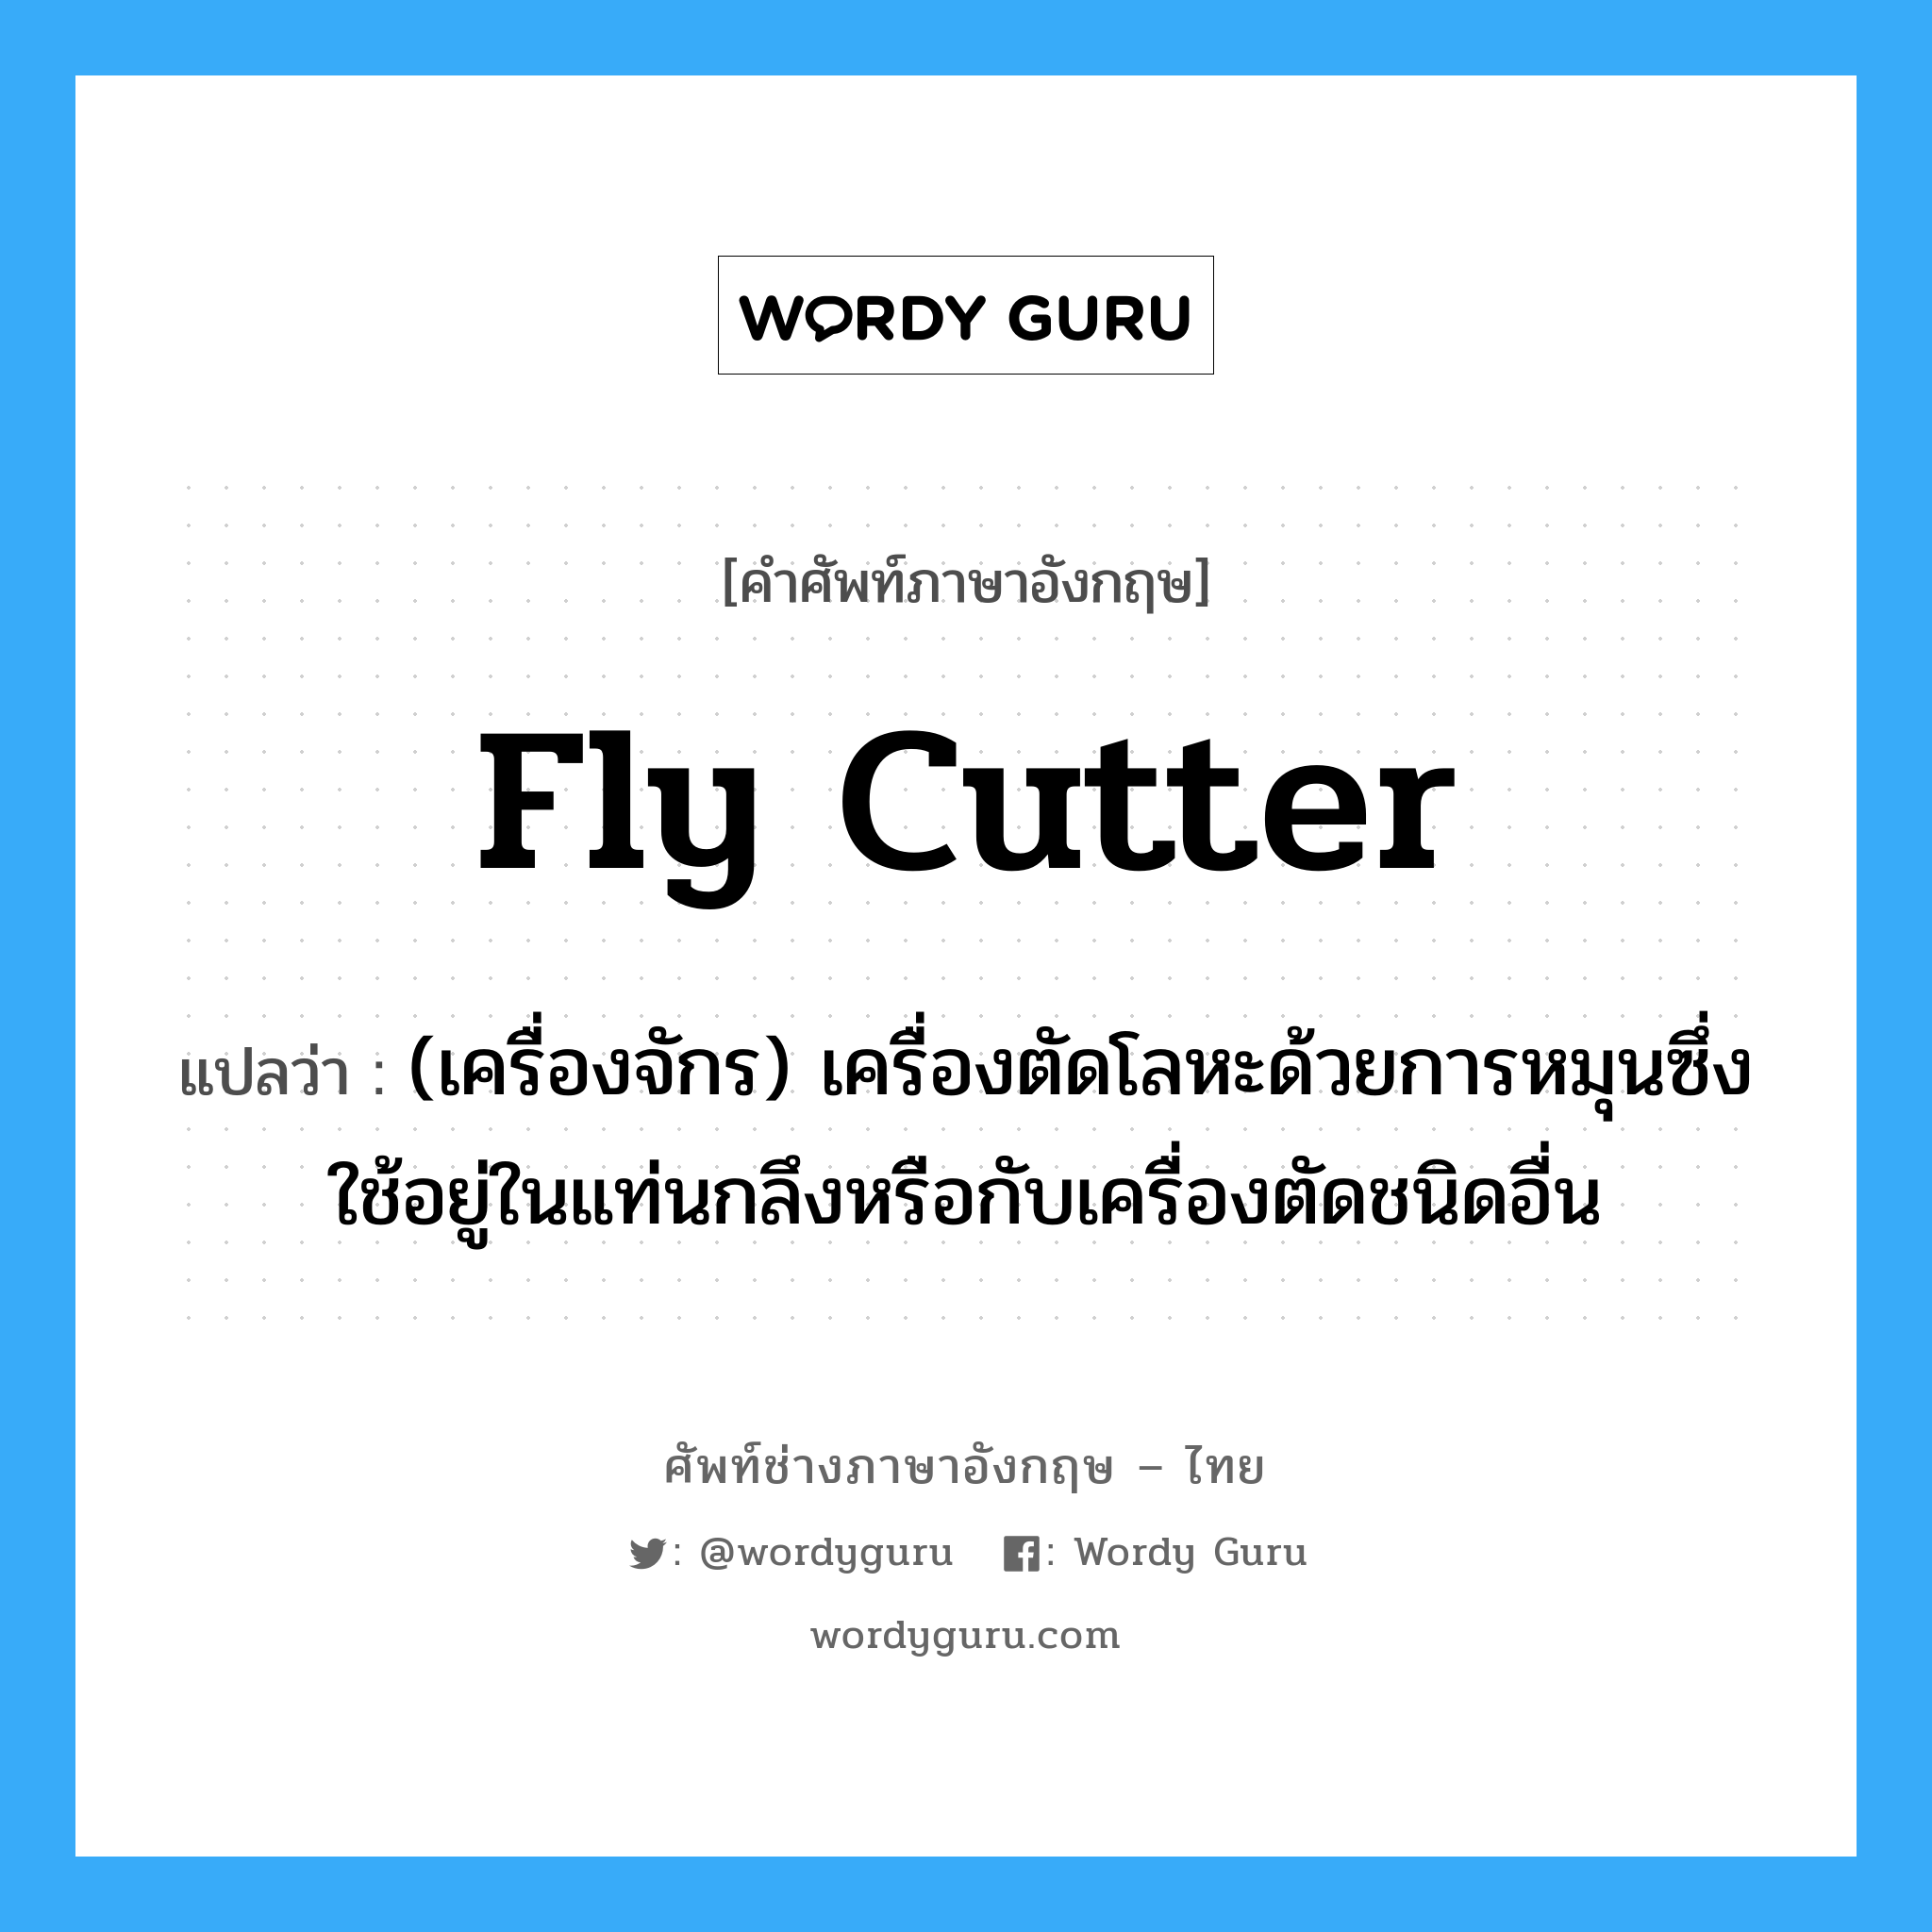 fly cutter แปลว่า?, คำศัพท์ช่างภาษาอังกฤษ - ไทย fly cutter คำศัพท์ภาษาอังกฤษ fly cutter แปลว่า (เครื่องจักร) เครื่องตัดโลหะด้วยการหมุนซึ่งใช้อยู่ในแท่นกลึงหรือกับเครื่องตัดชนิดอื่น